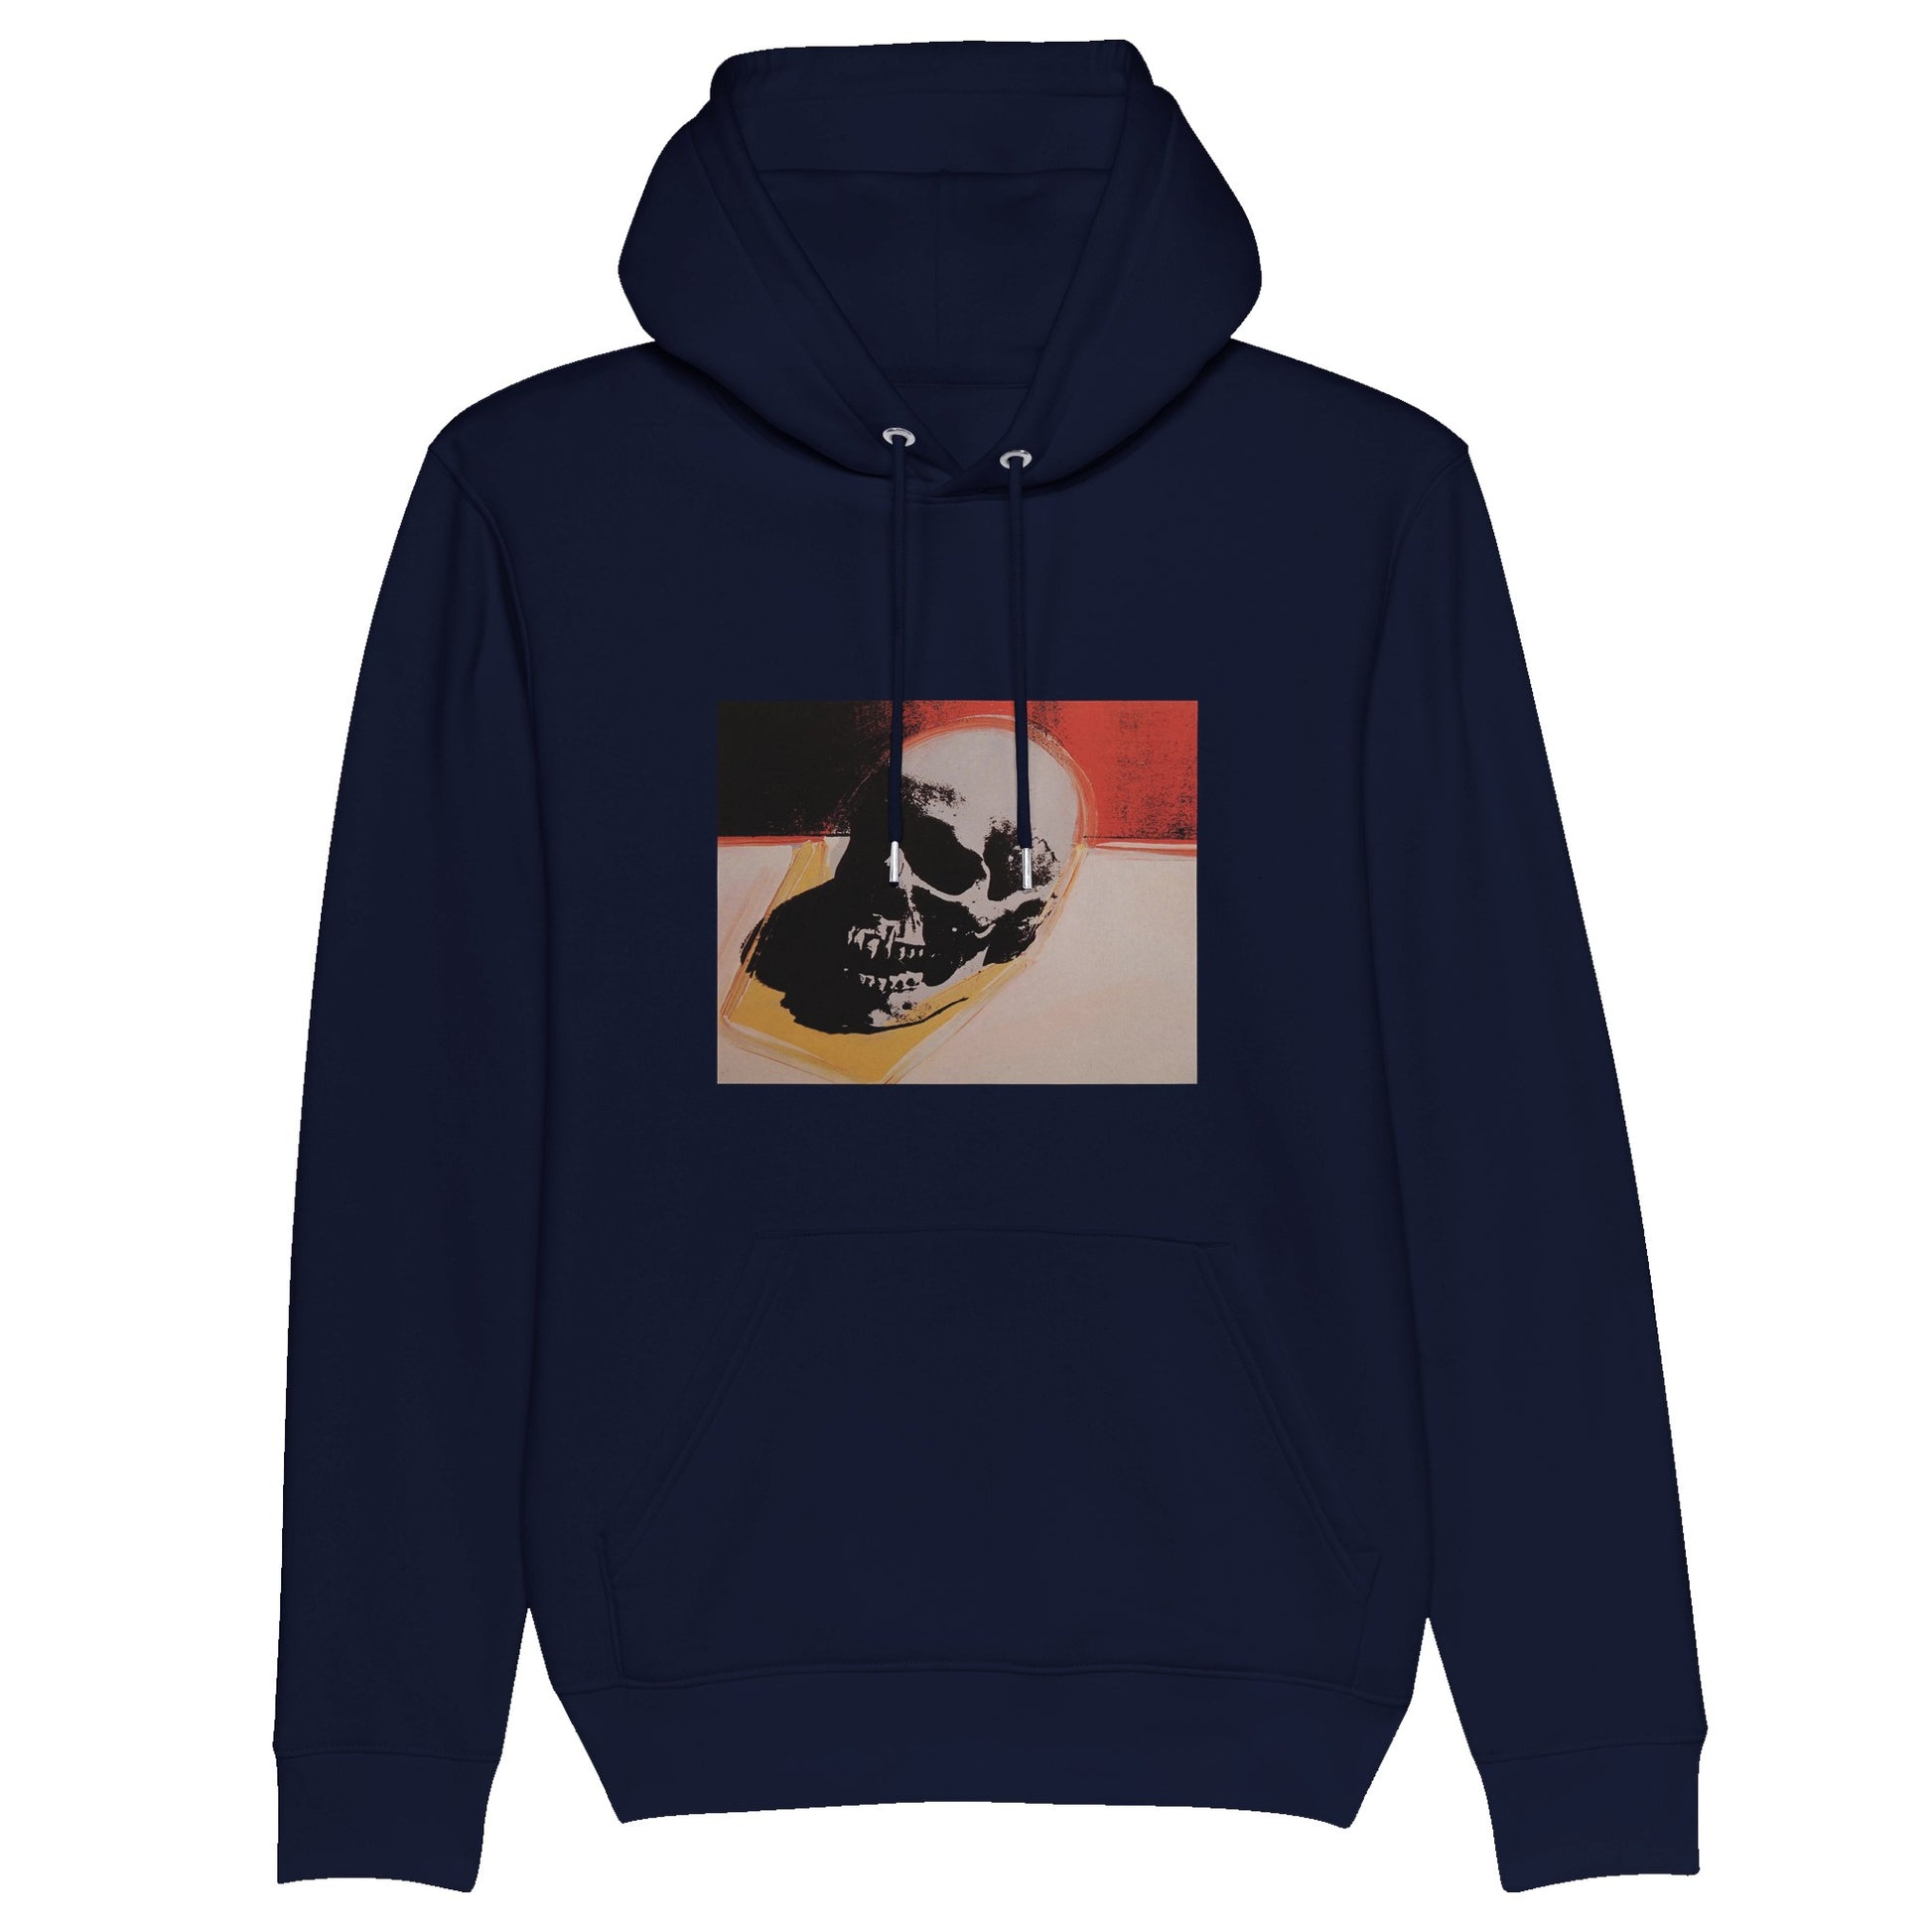 Andy Warhol hoodie